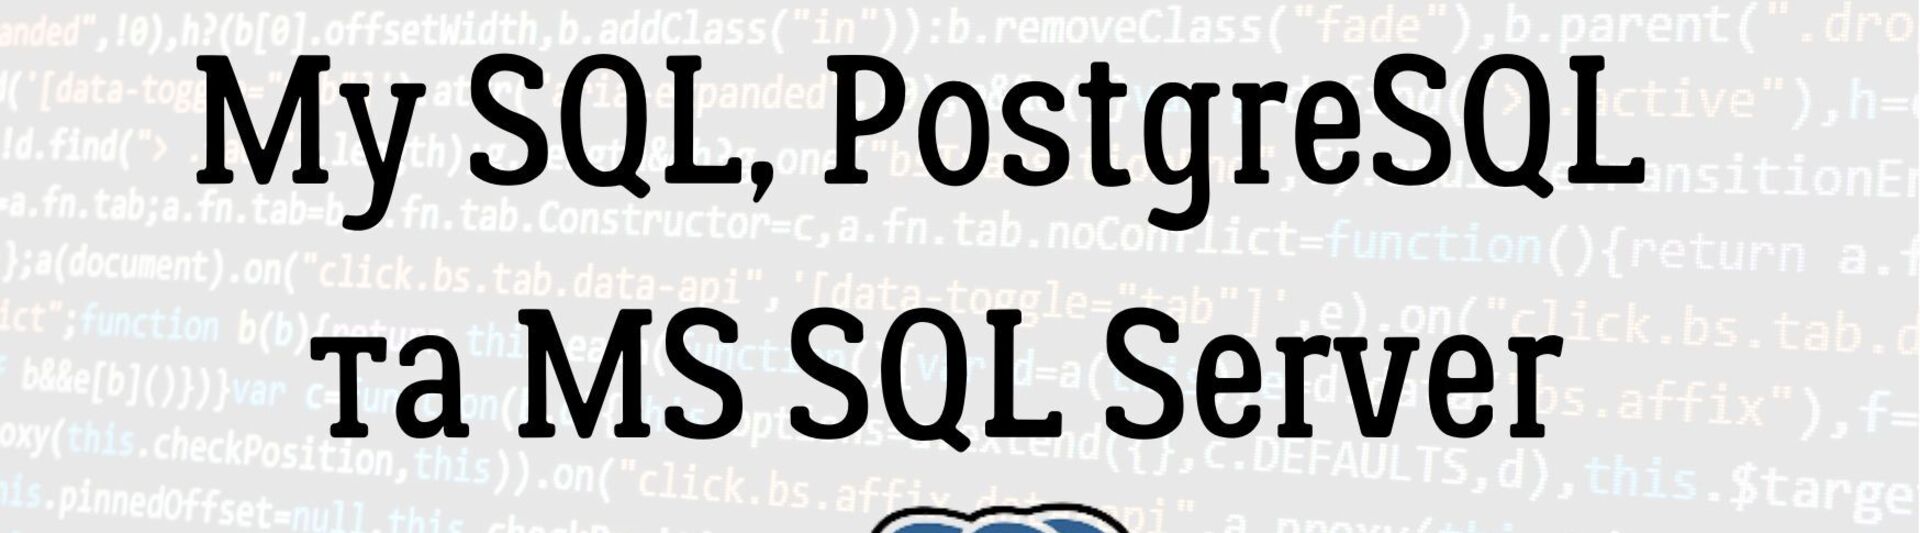 Порівняння СУБД My SQL, PostgreSQL та MS SQL Server